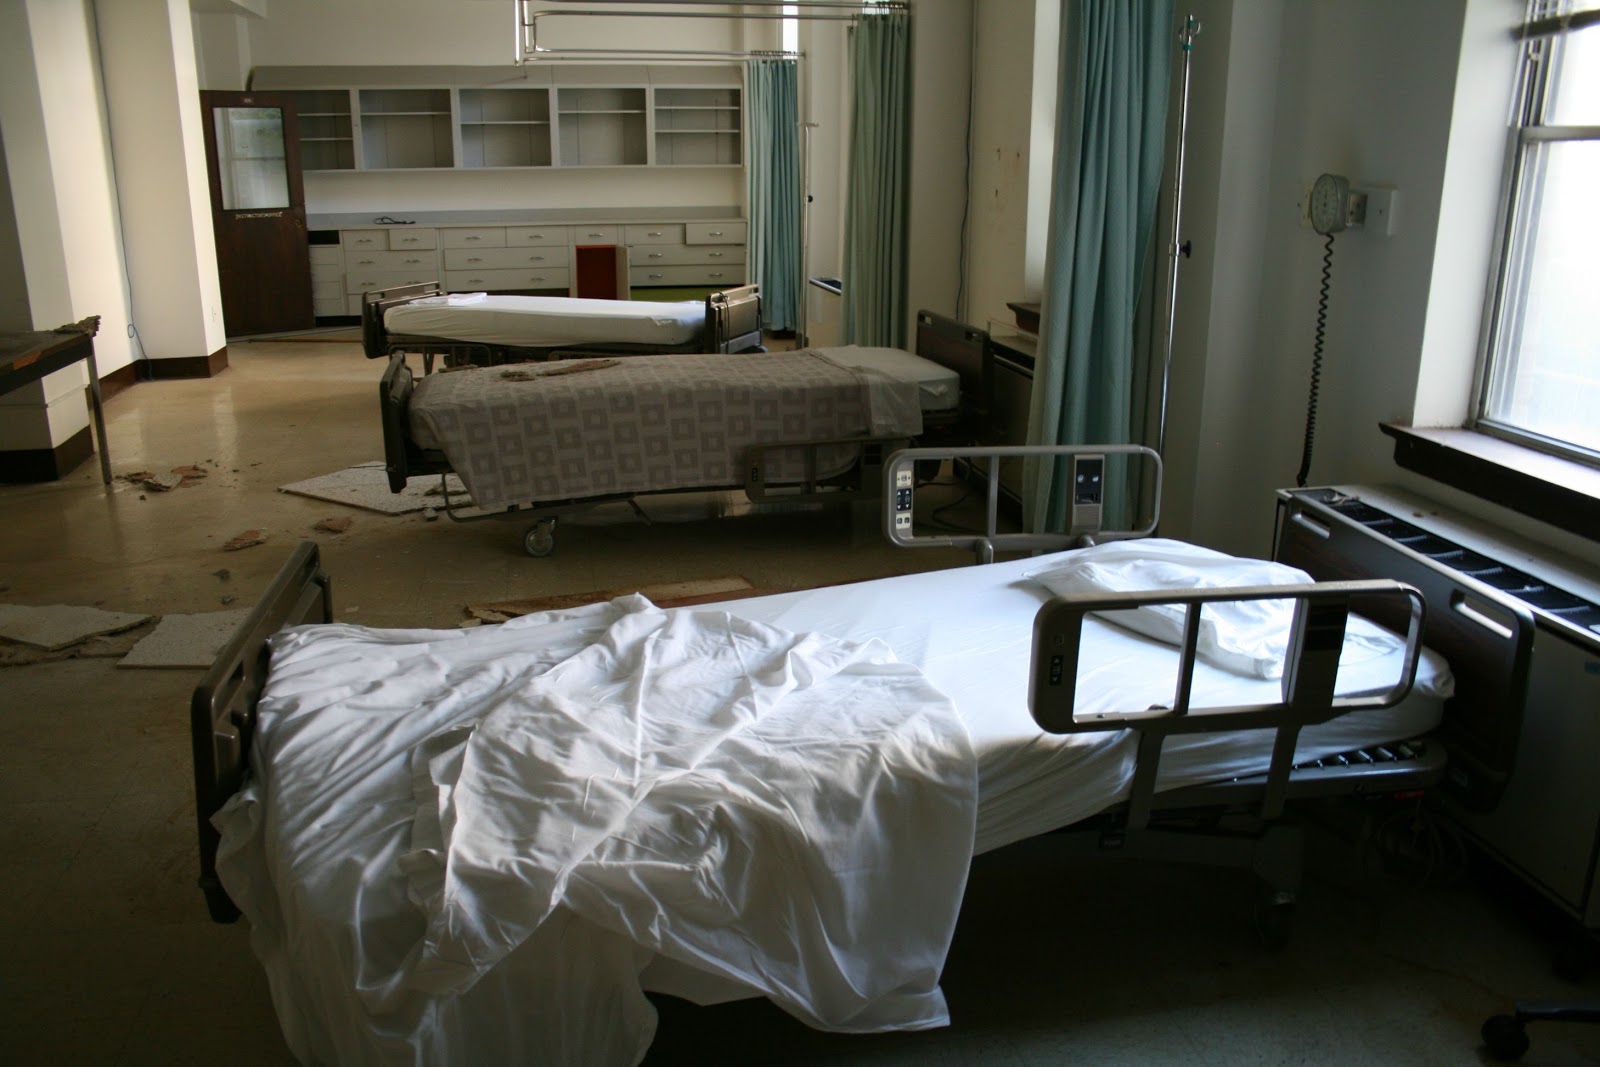 Deserted hospitals